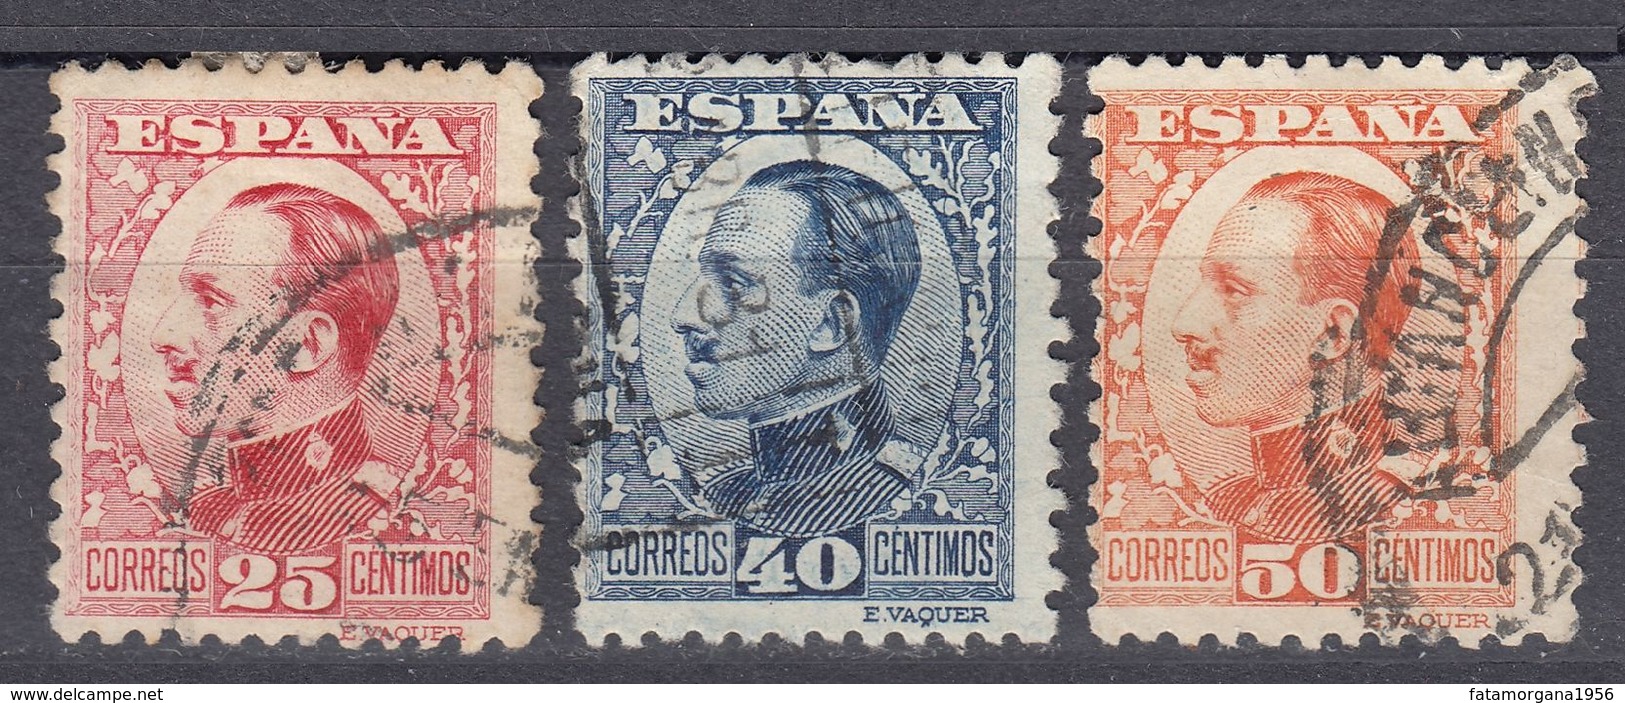 ESPAÑA - SPAGNA - SPAIN - ESPAGNE - 1930/1931 - Lotto Di 3 Valori Usati: Yvert 409, 410 E 411. - Usati